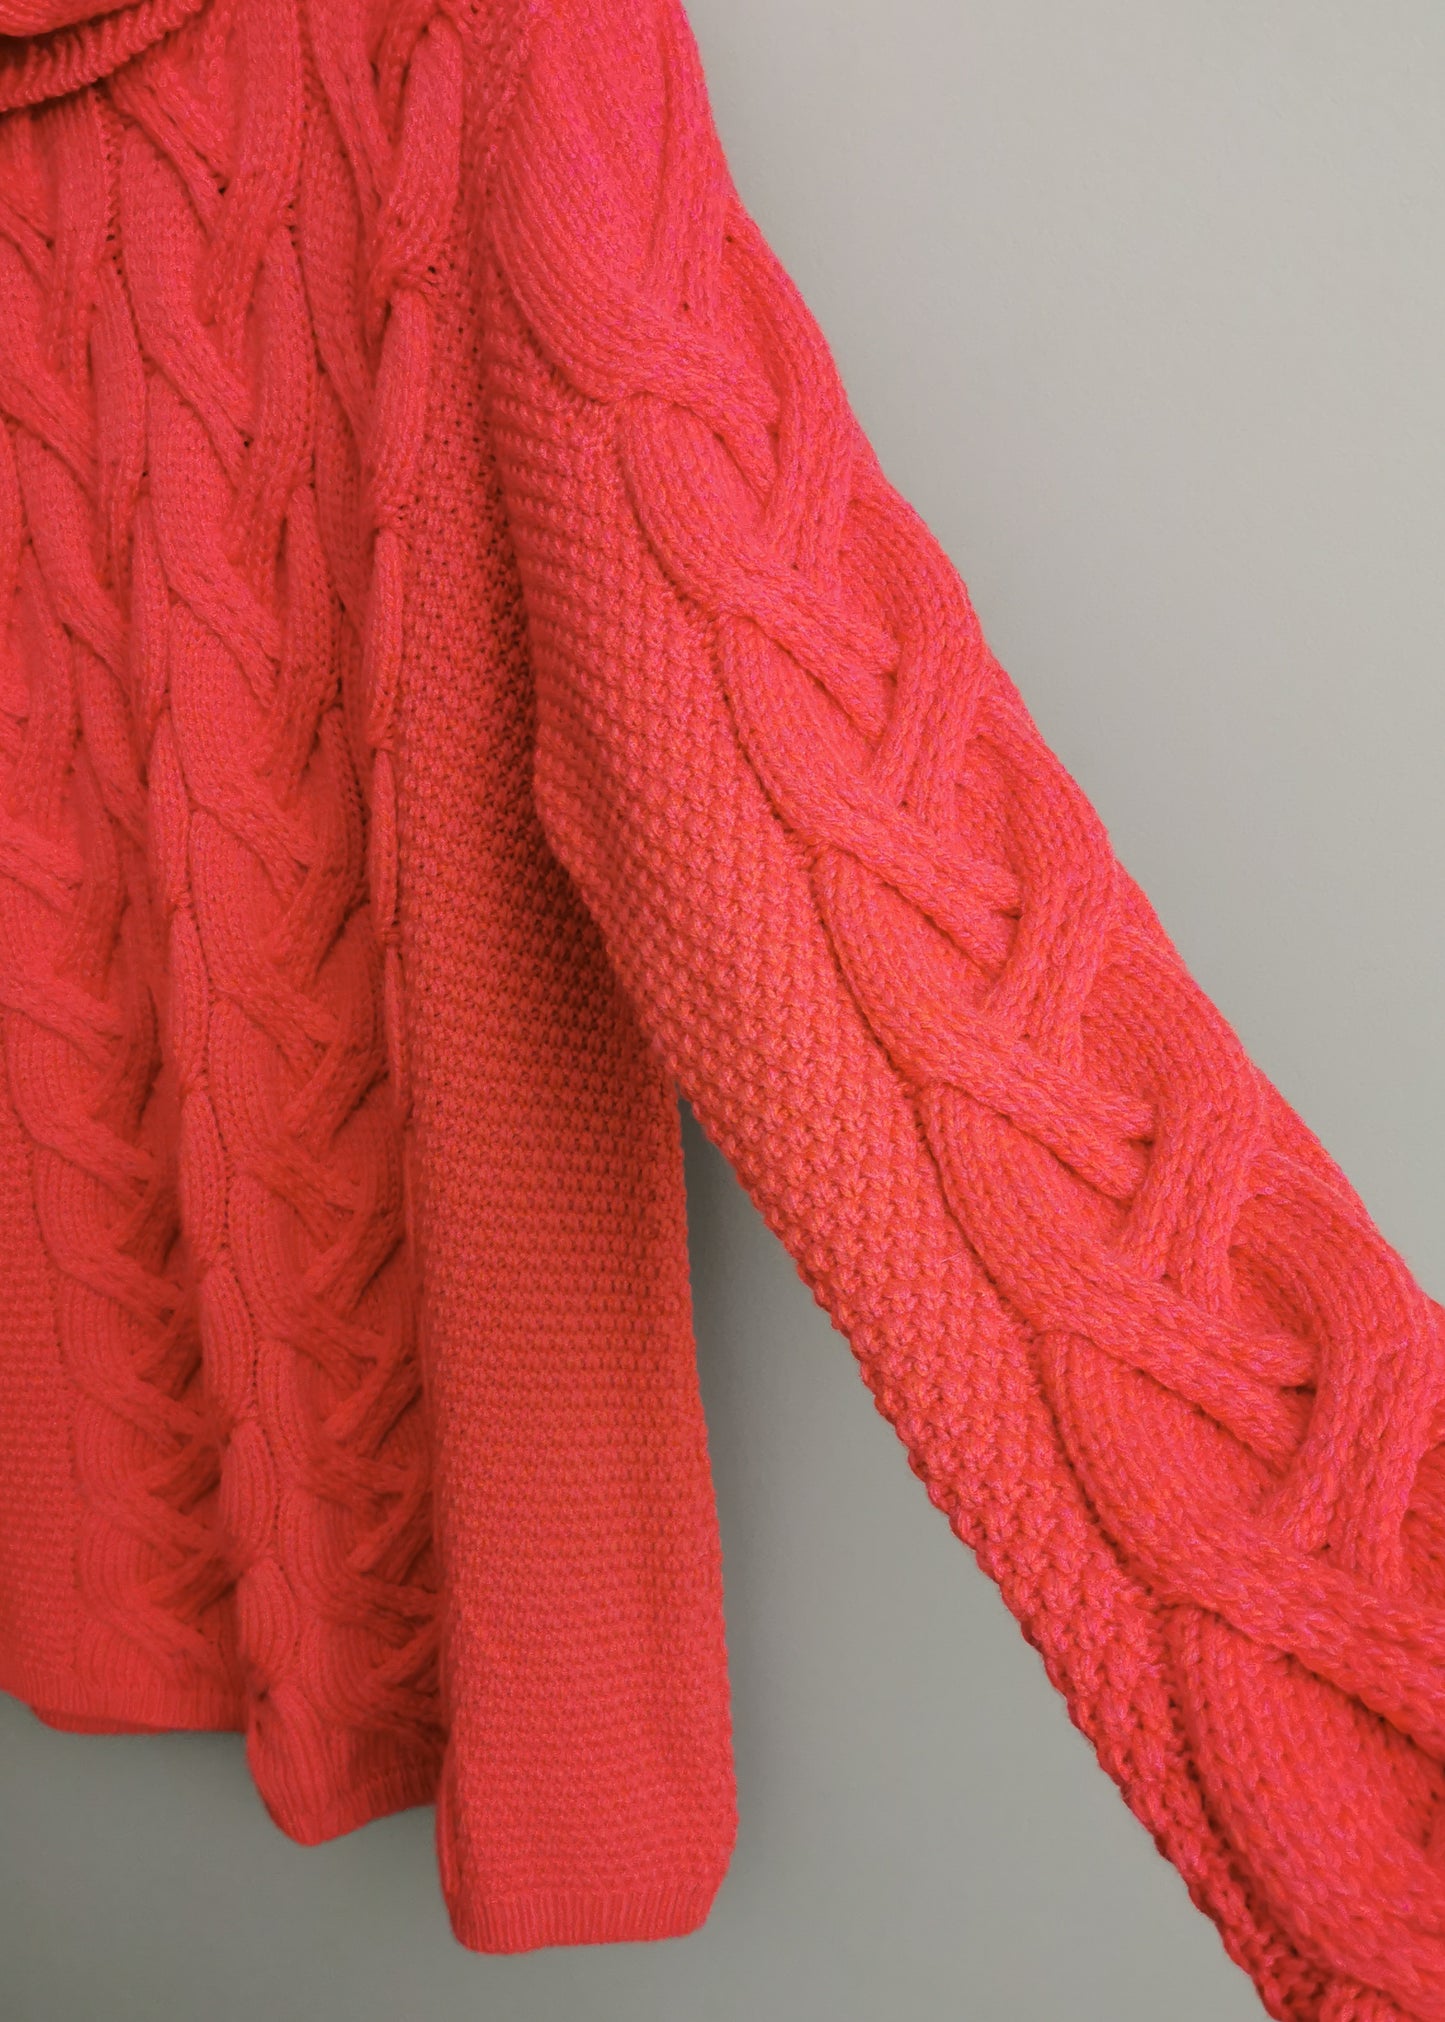 Aran Woolen Mills Kinsale Merino Wool Cable Knit Sweater (XXL)